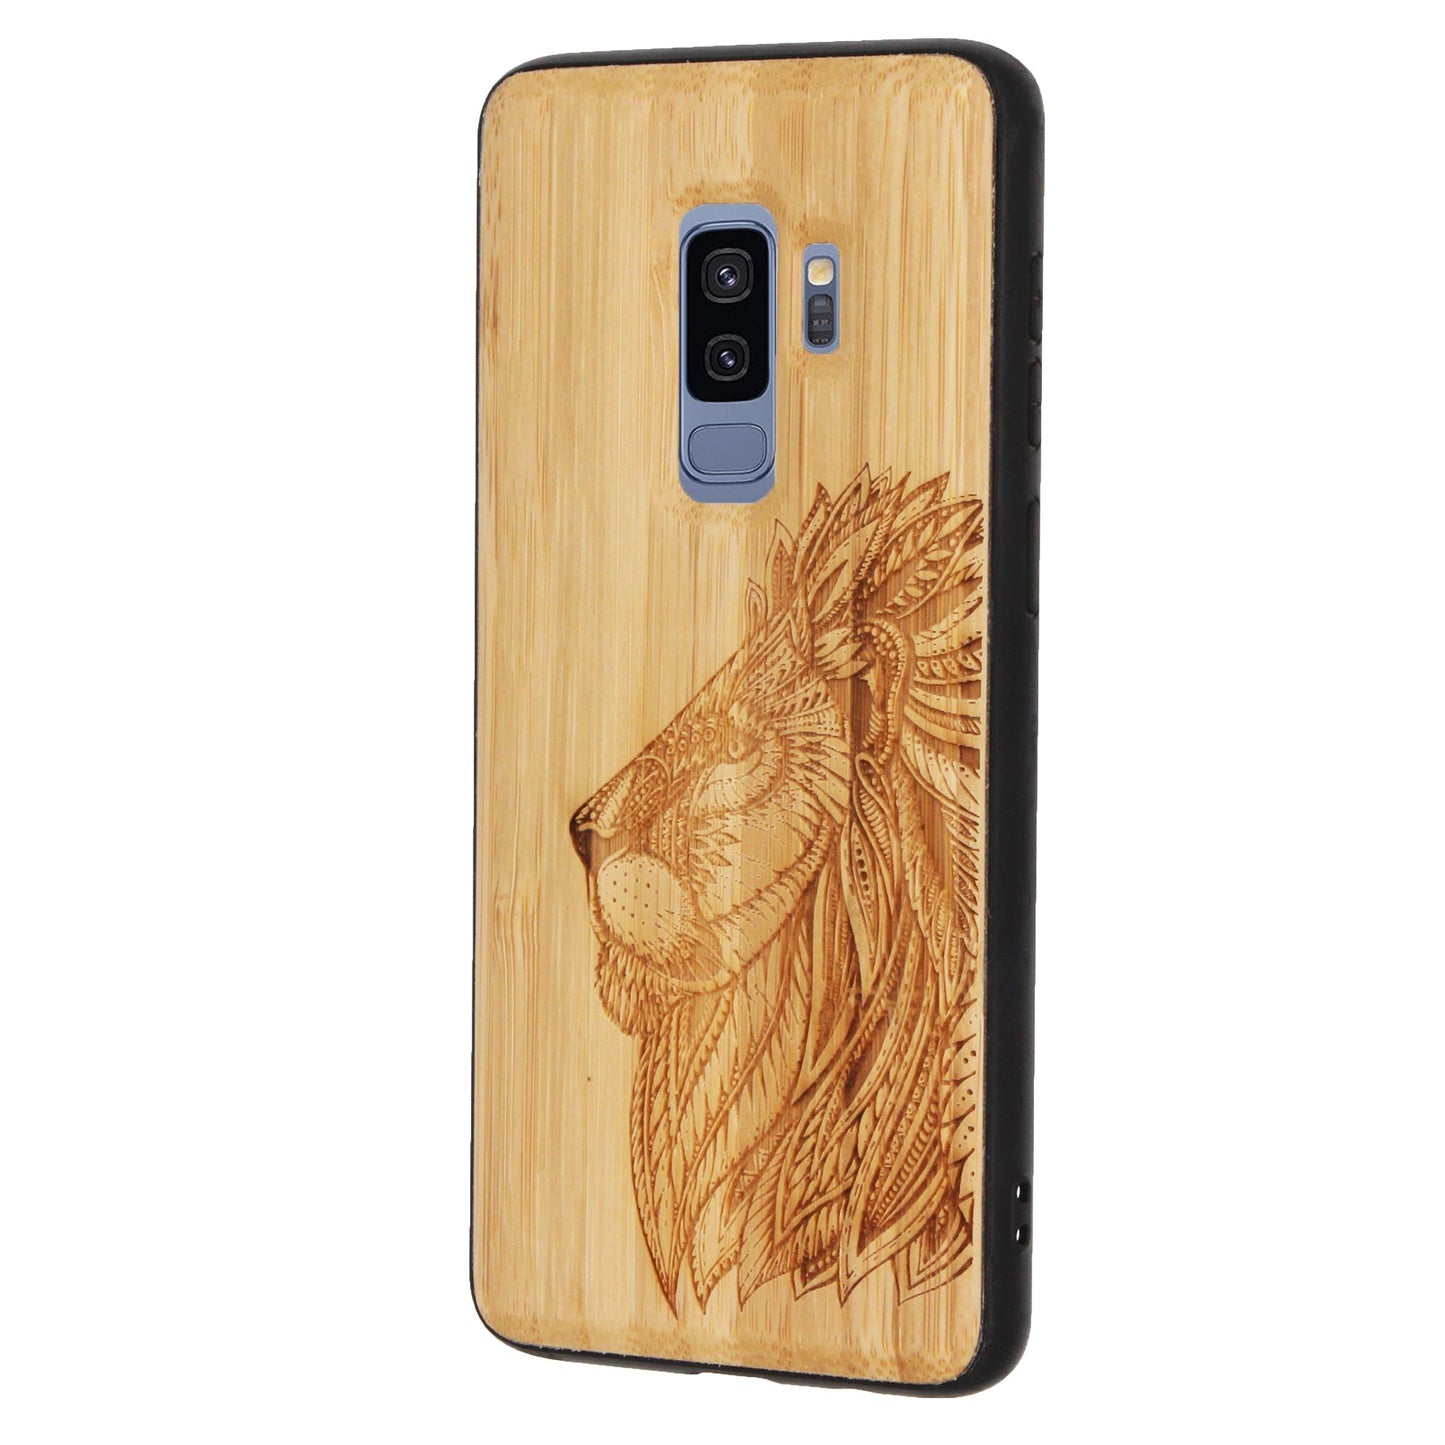 Löwe Eden Case aus Bambus für Samsung Galaxy S9 Plus